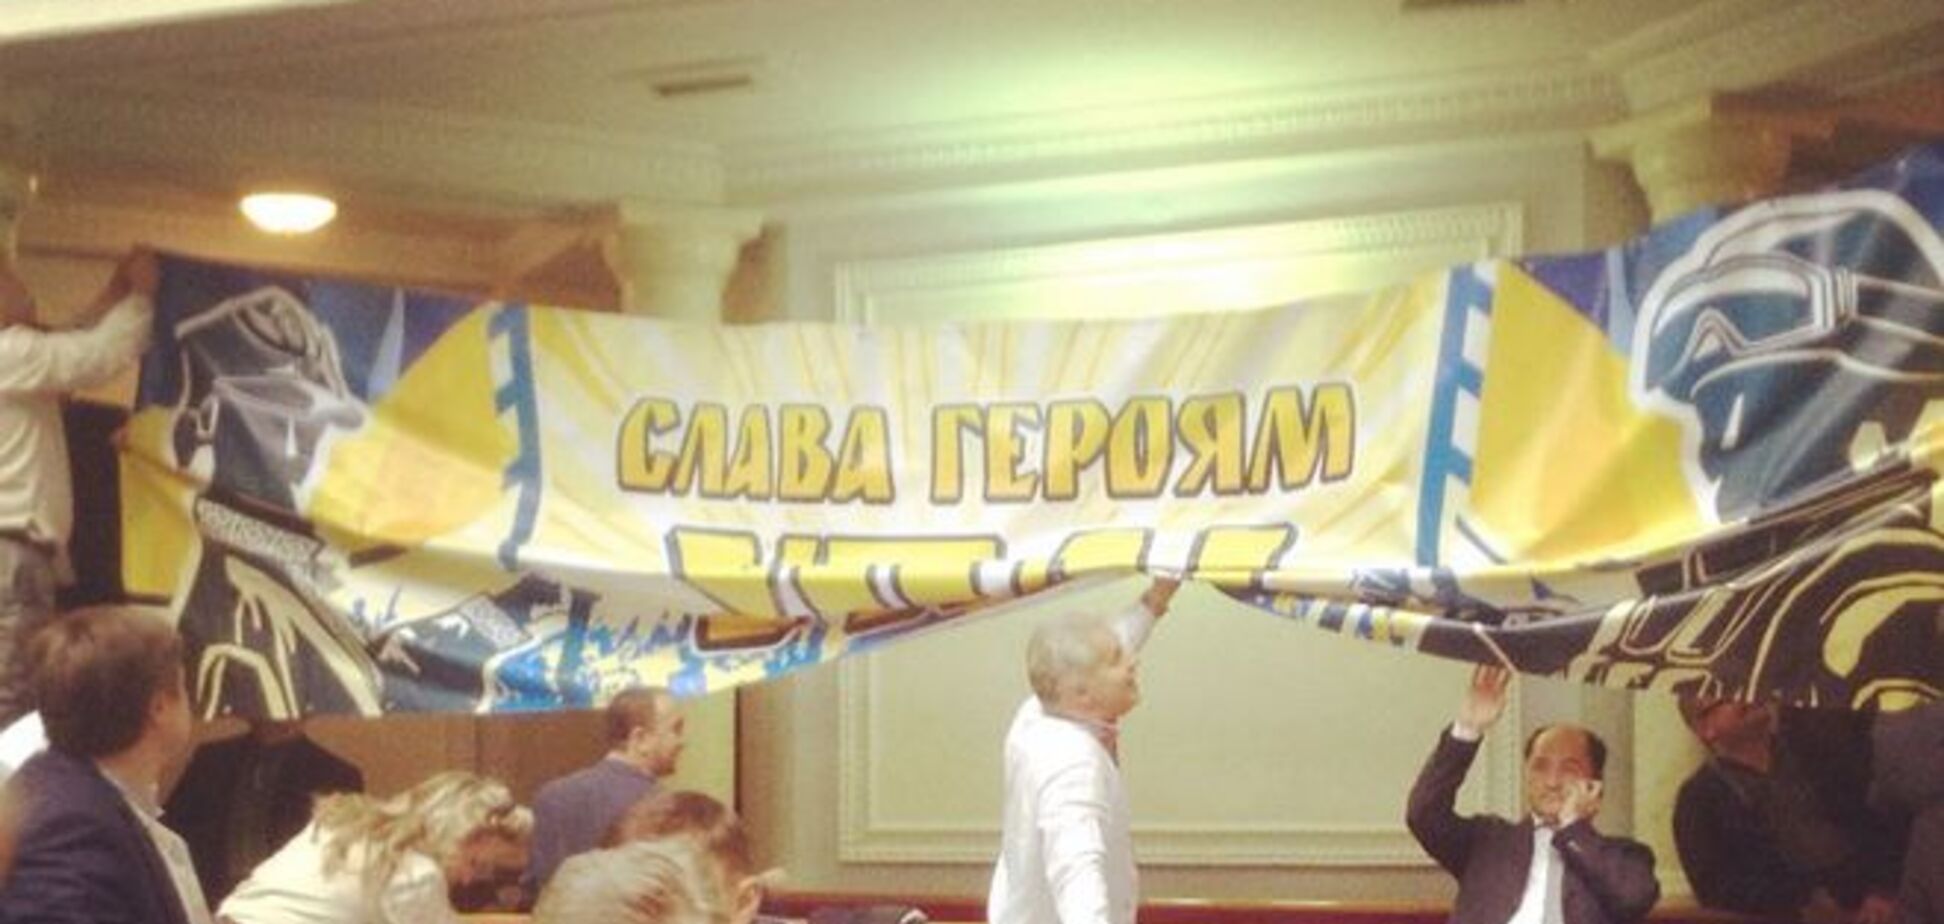 Депутати прикрасили сесійний зал ВР банером 'Слава героям УПА': опубліковано фото